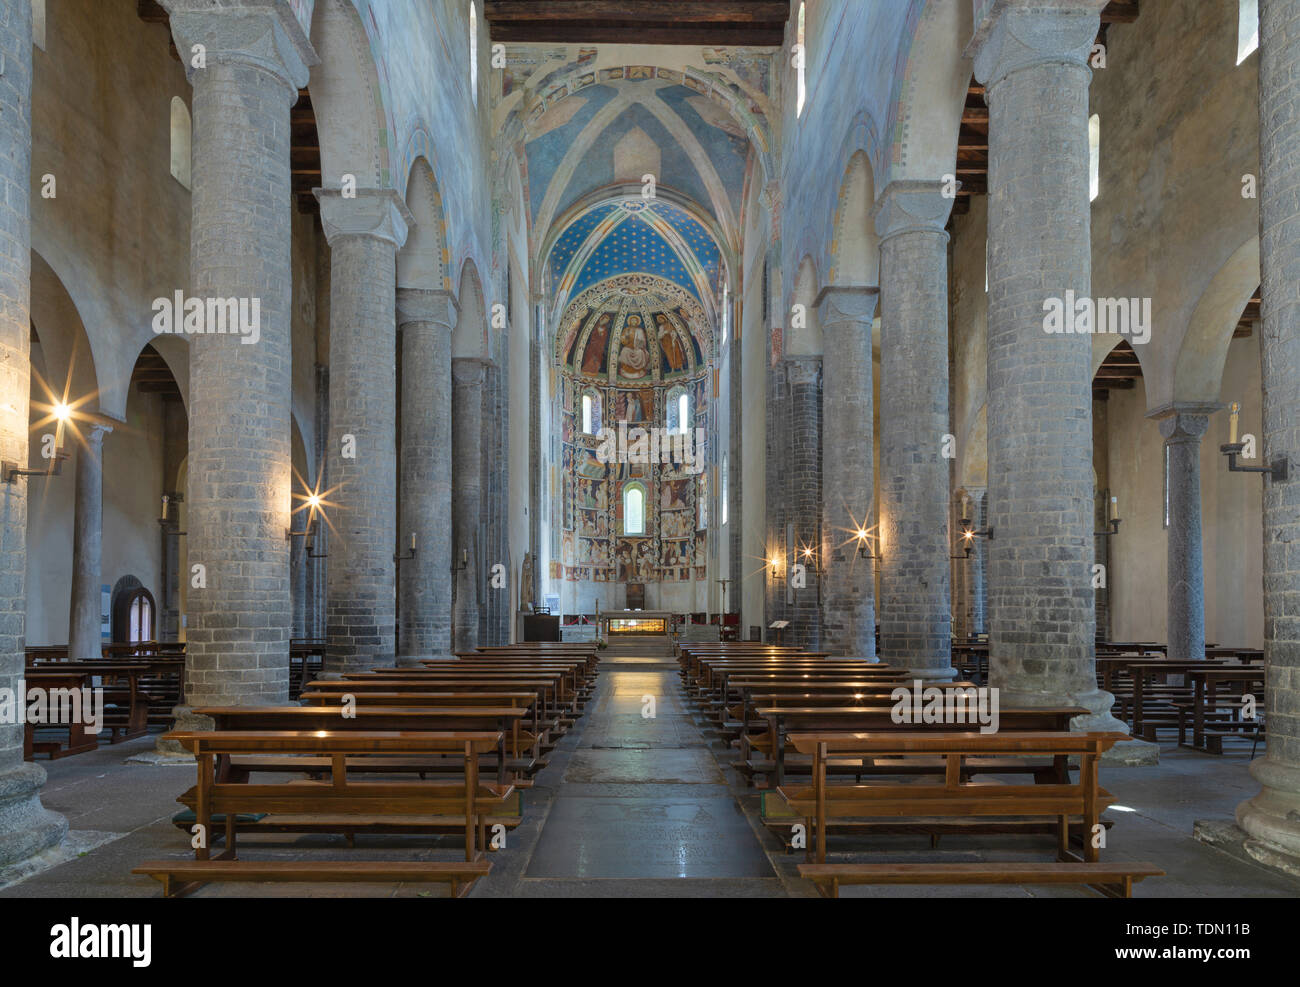 COMO, Italia - 9 de mayo de 2015: La iglesia basílica de San Abbondio con los frescos medievales por artista desconocido 'Maestro di Sant'Abbondio' (1315 - 1324). Foto de stock